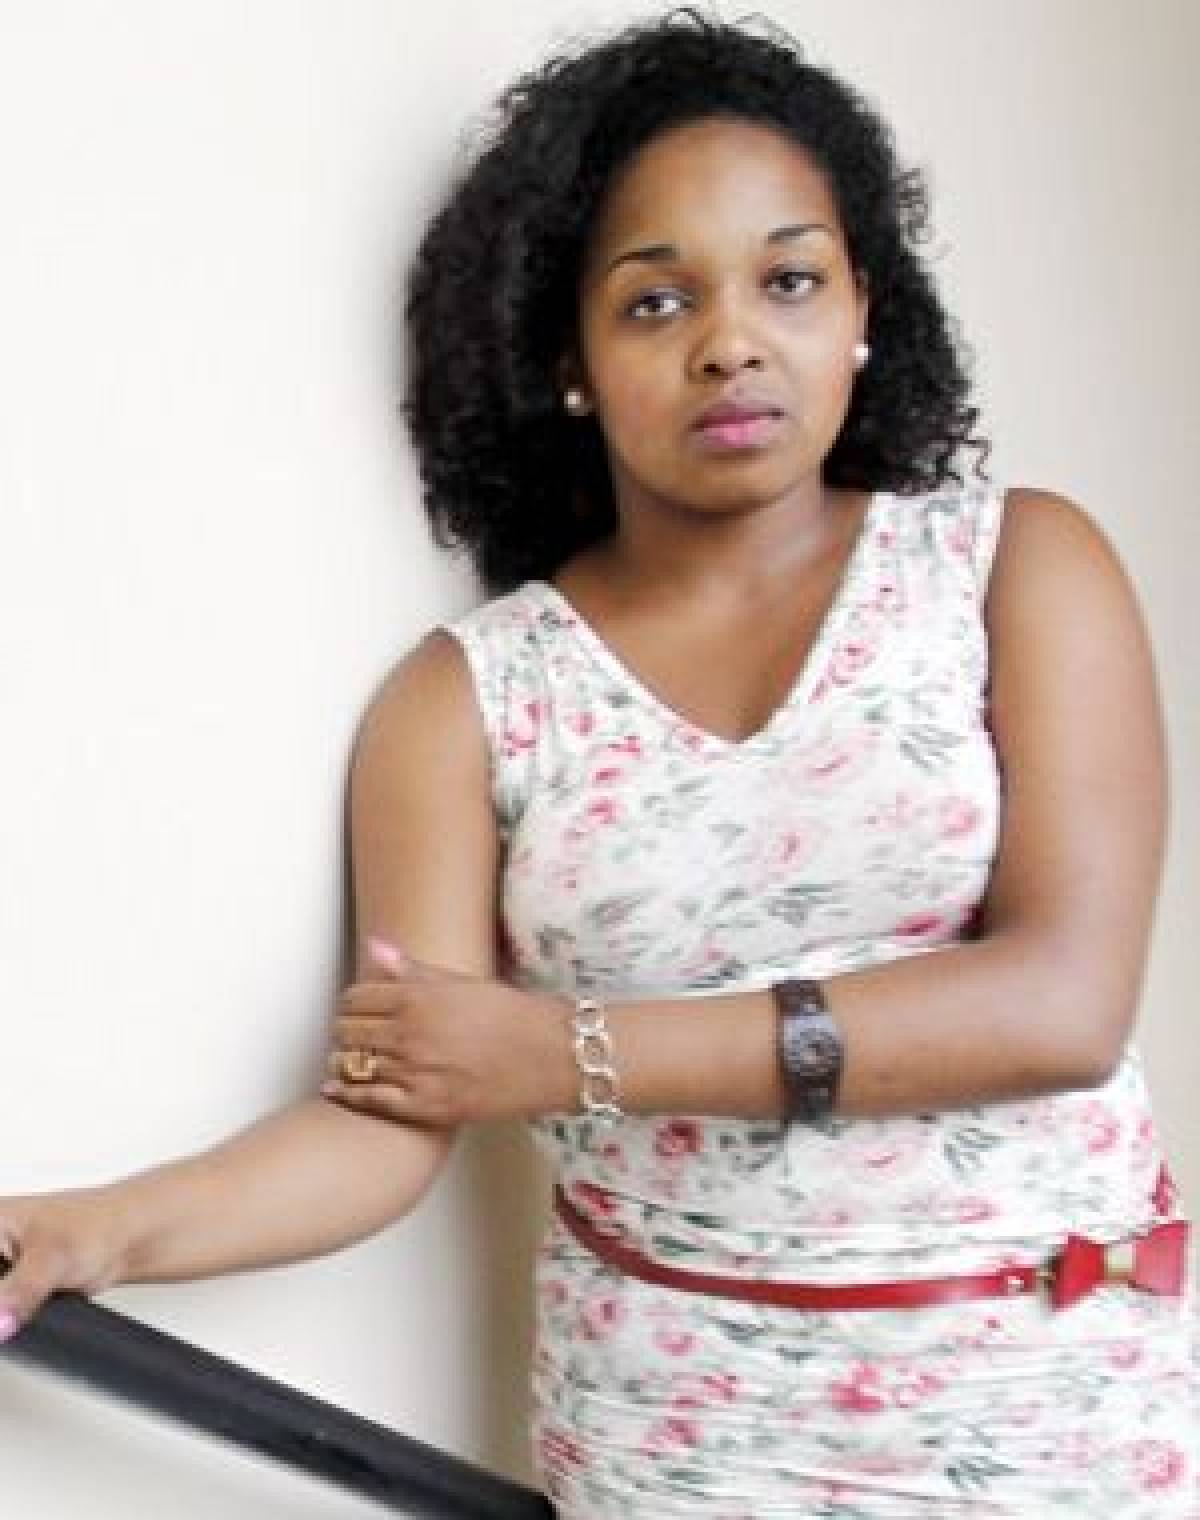 Racismo: Estagiária se recusa a alisar cabelo e é hostilizada no trabalho 